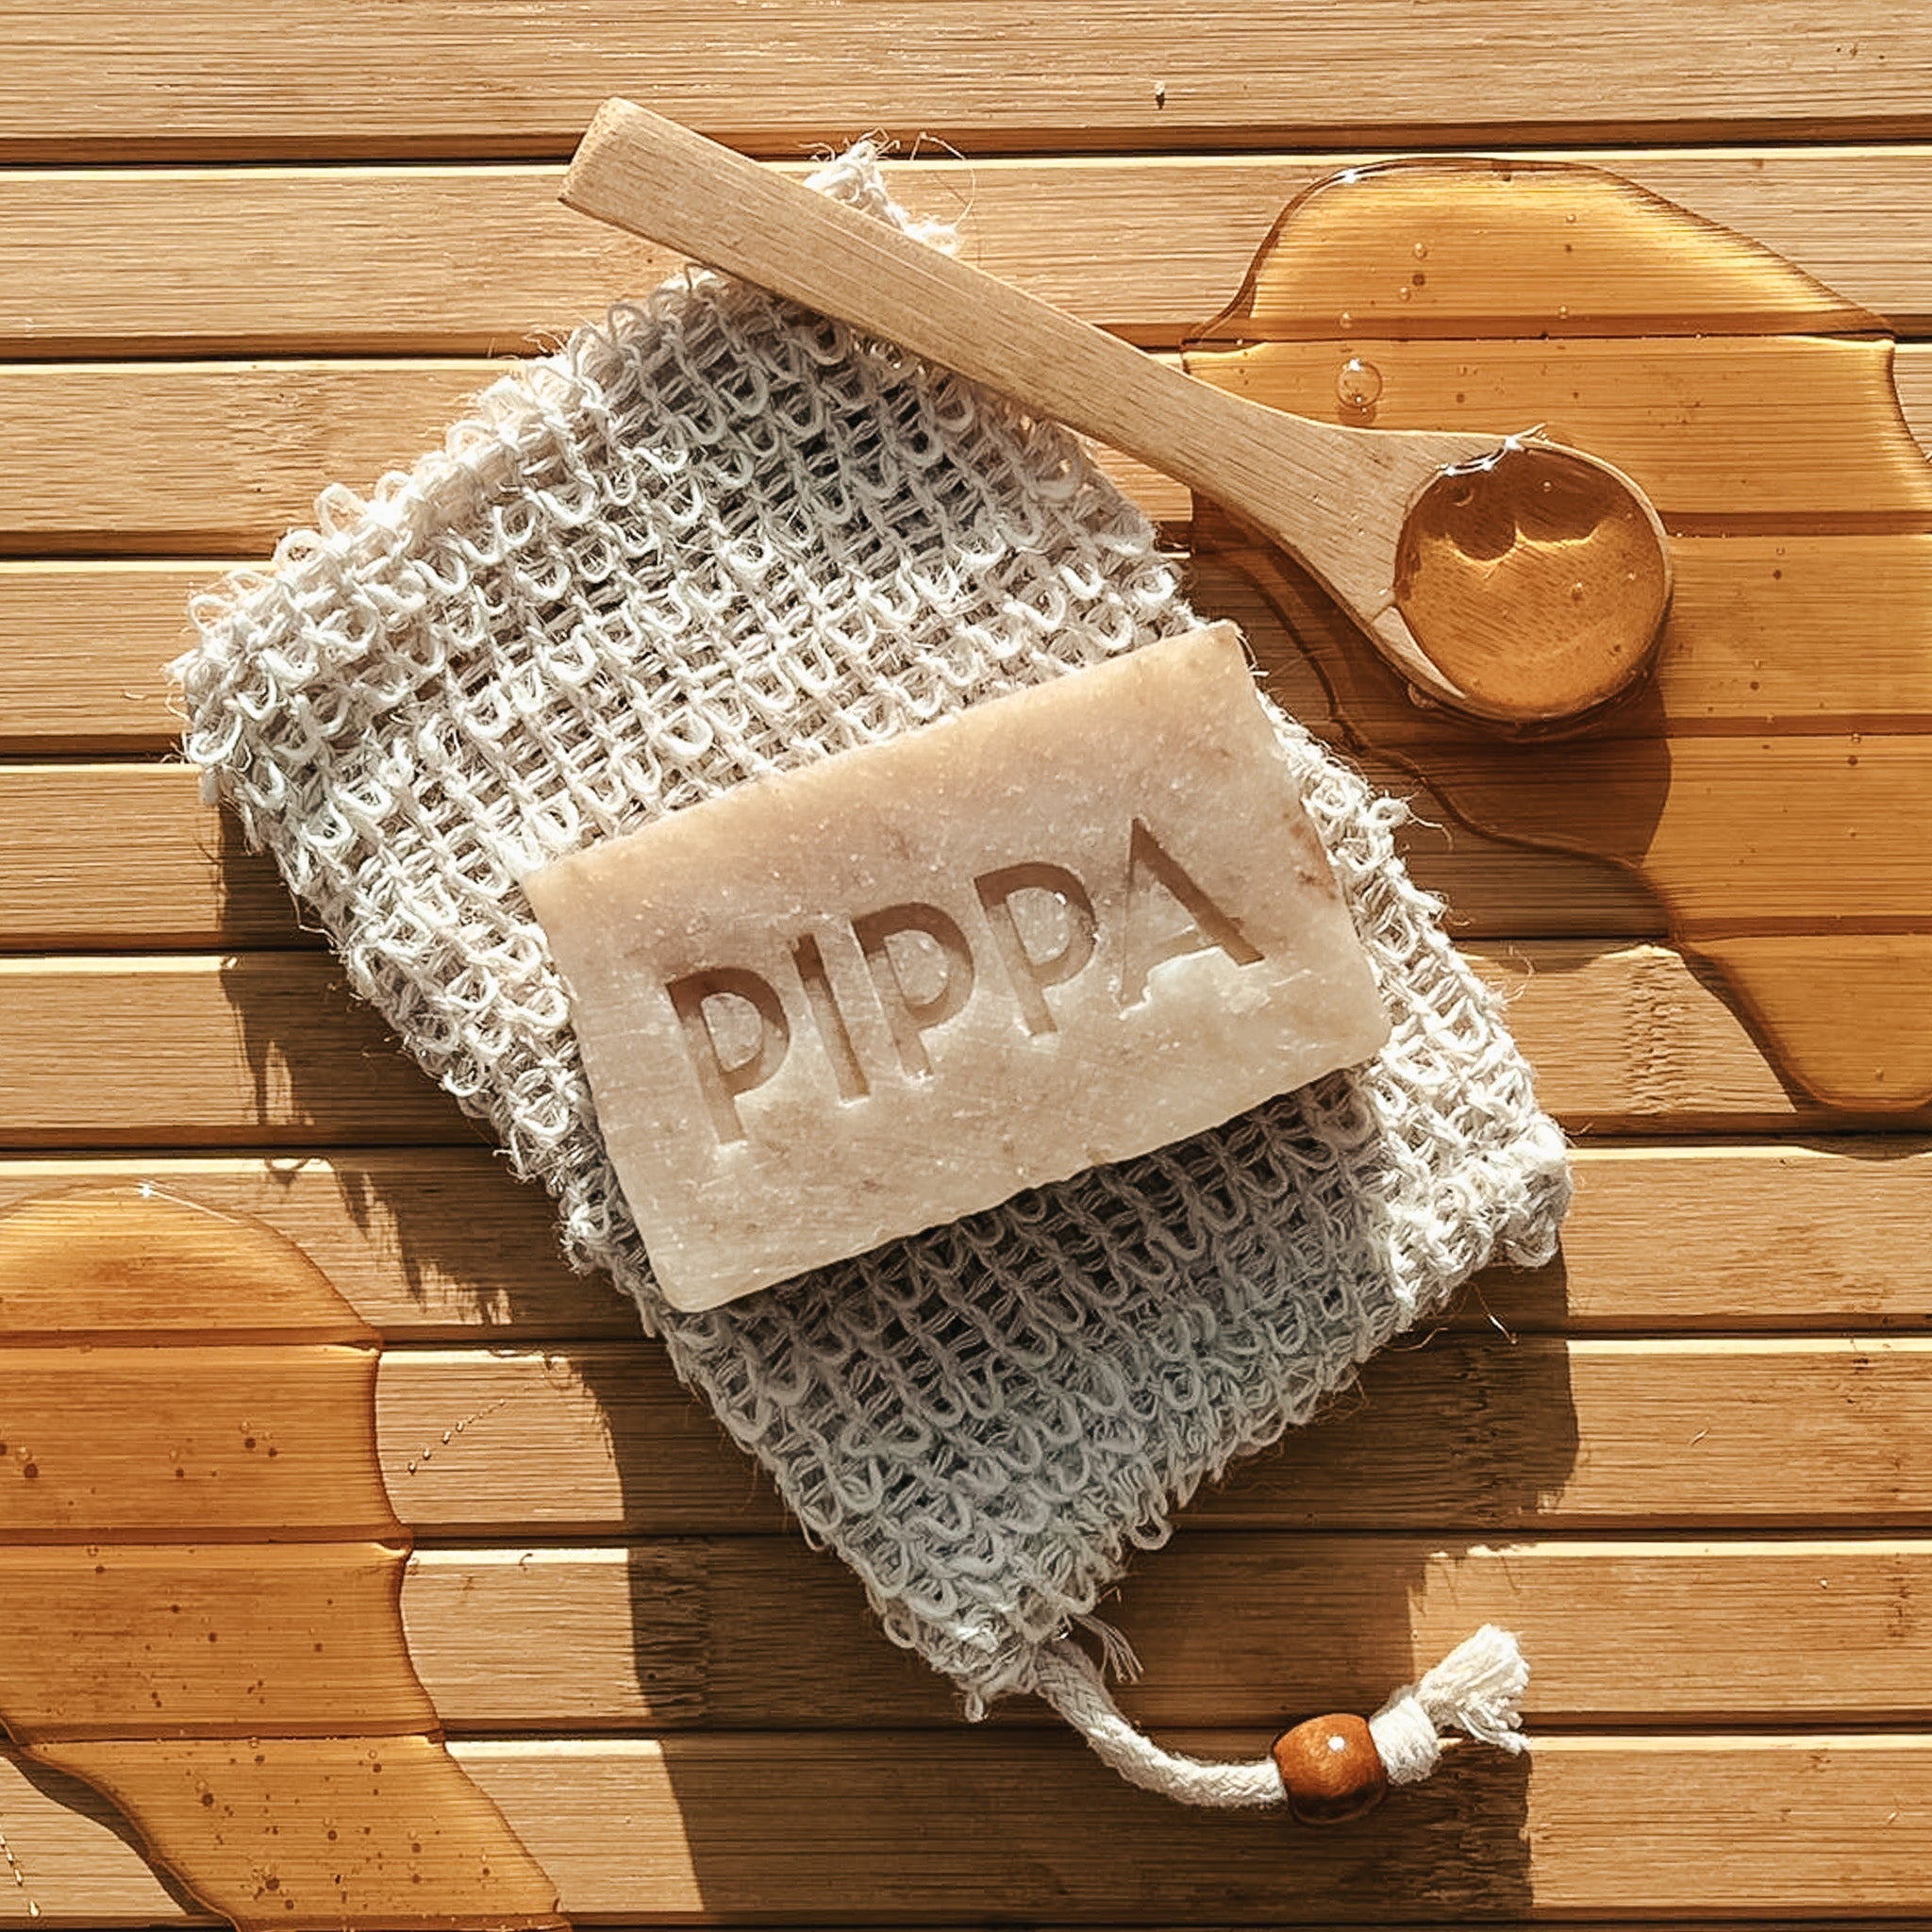 PIPPA Hondenshampoo Honey & Propolis - PIPPA Equestrian Soap - Shampoo en crèmespoeling voor huisdieren